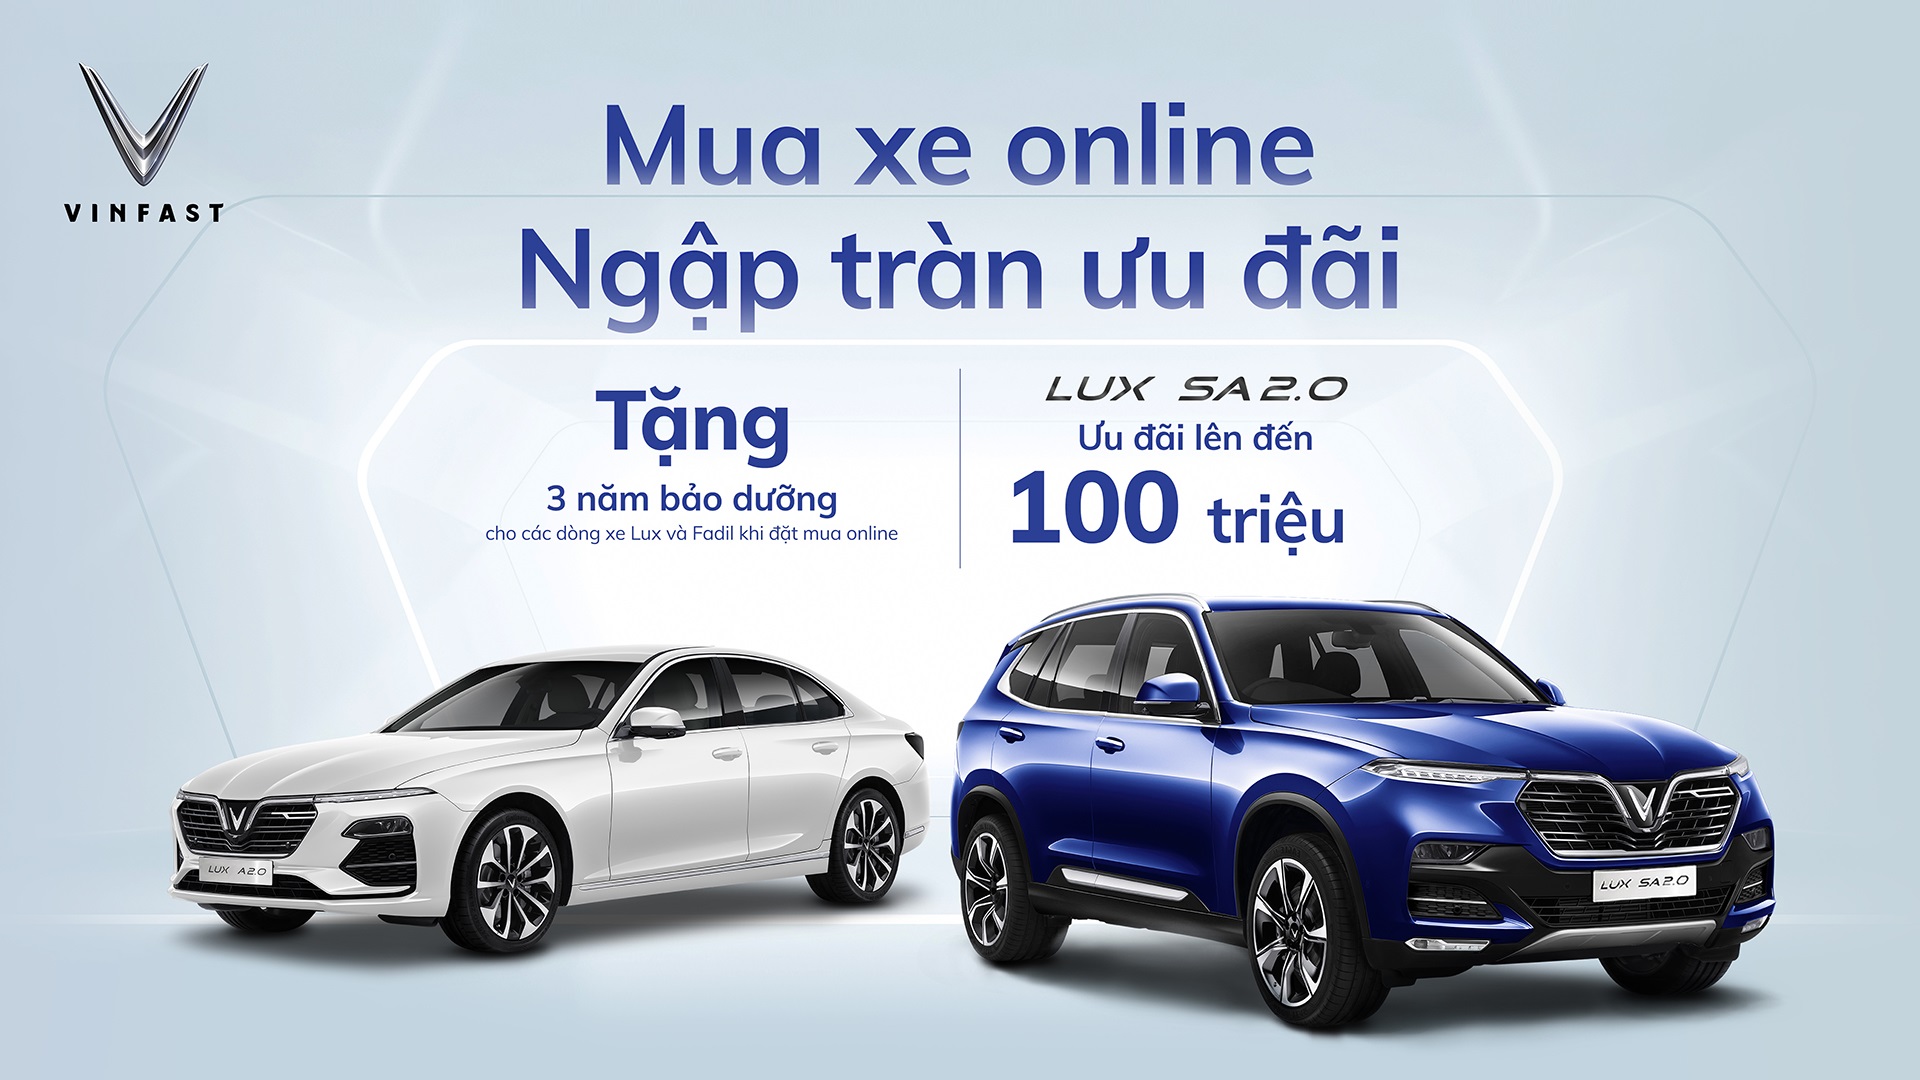 VinFast thiết lập chuẩn mới trong kinh doanh ô tô trực tuyến tại Việt Nam - Ảnh 1.